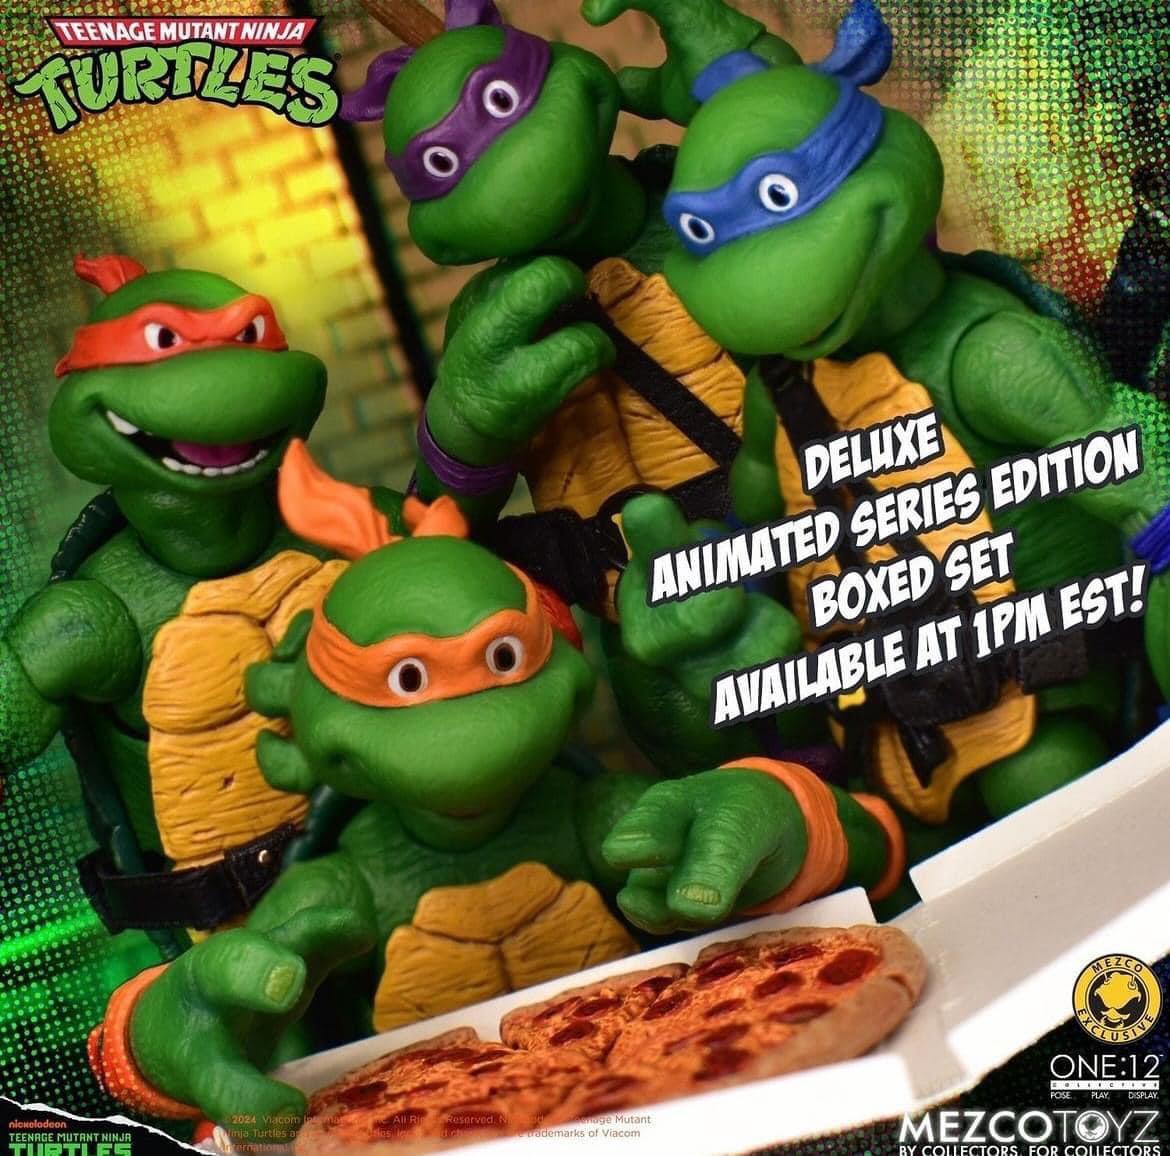 Mezco anunció un nuevo set de Tortugas, ahora basadas en la serie animada y con el mismo costo que las anteriores  $400 USD.

No soy fan de que utilicen el mismo cuerpo de las otras, solo los repintaron y cambiaron las cabezas las cuales siento no quedan bien.